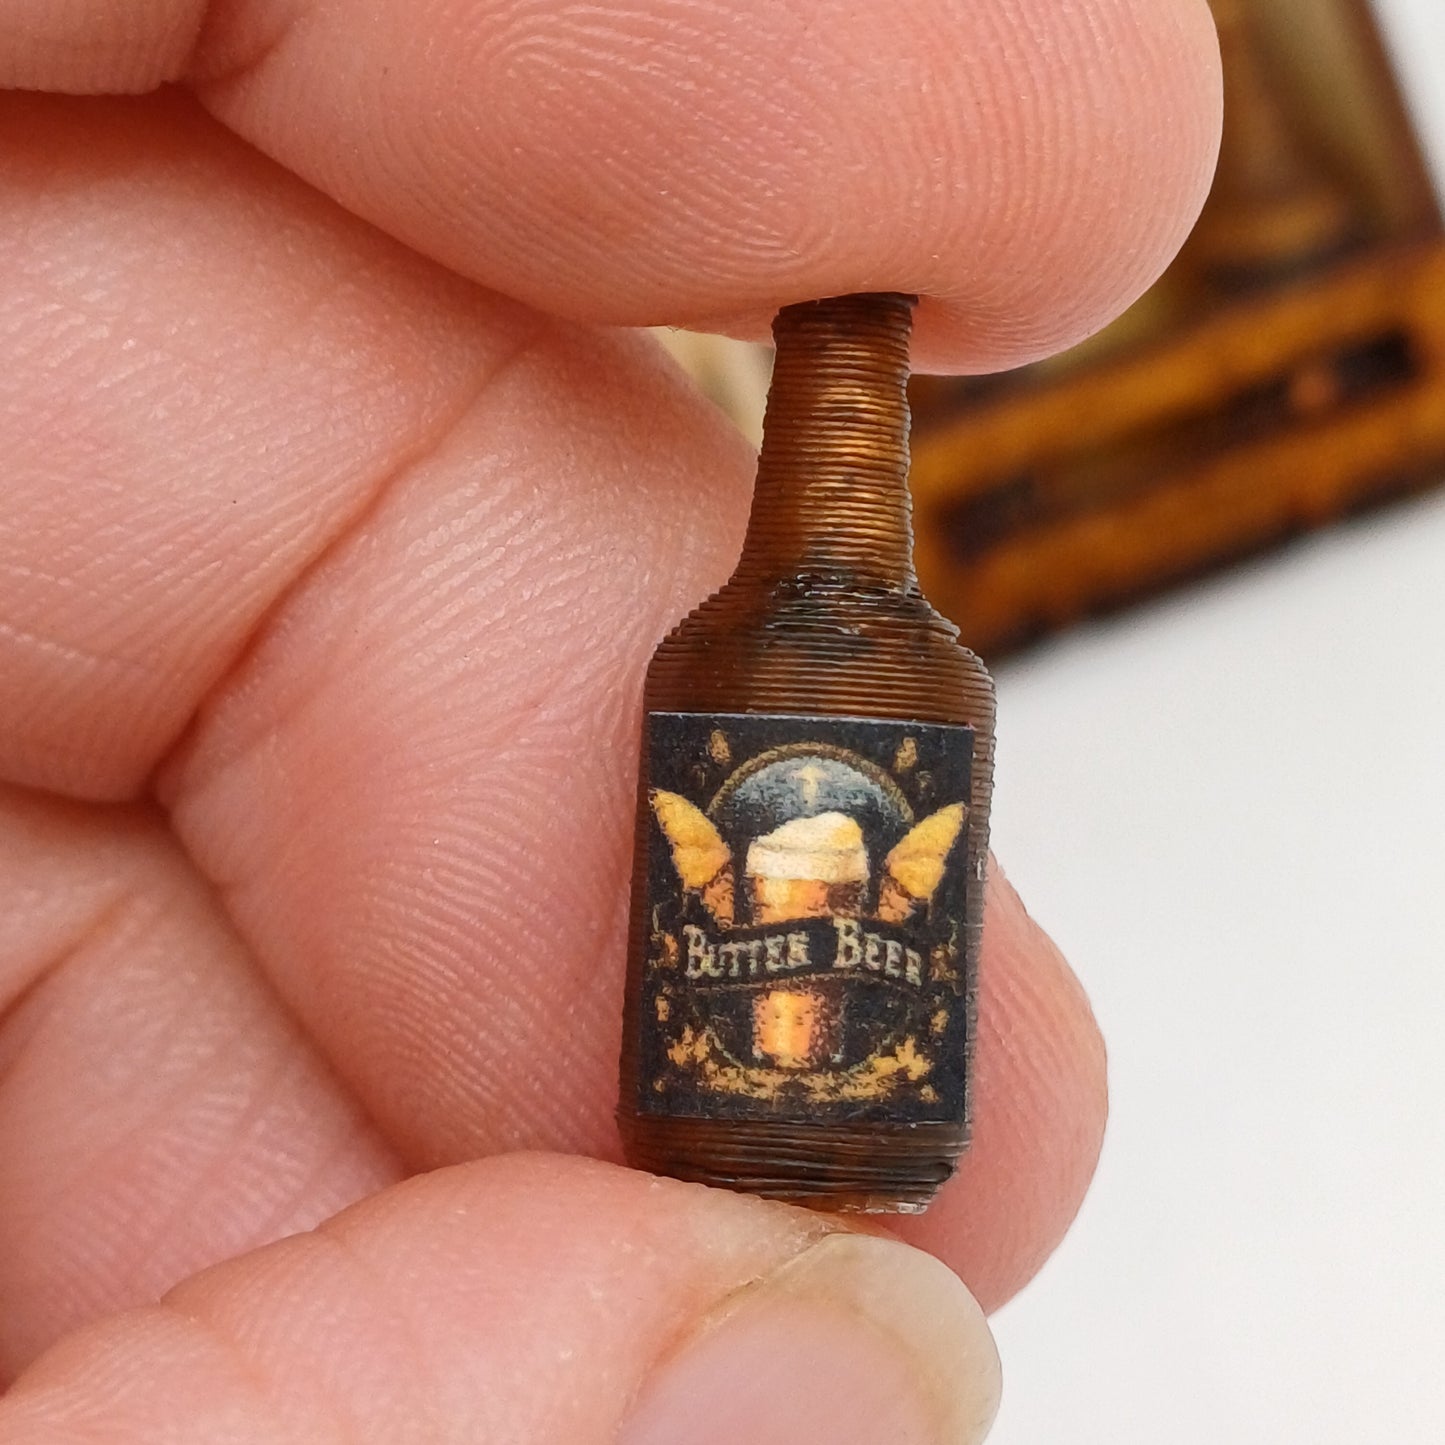 Beer bottles 1:12 scale miniatures